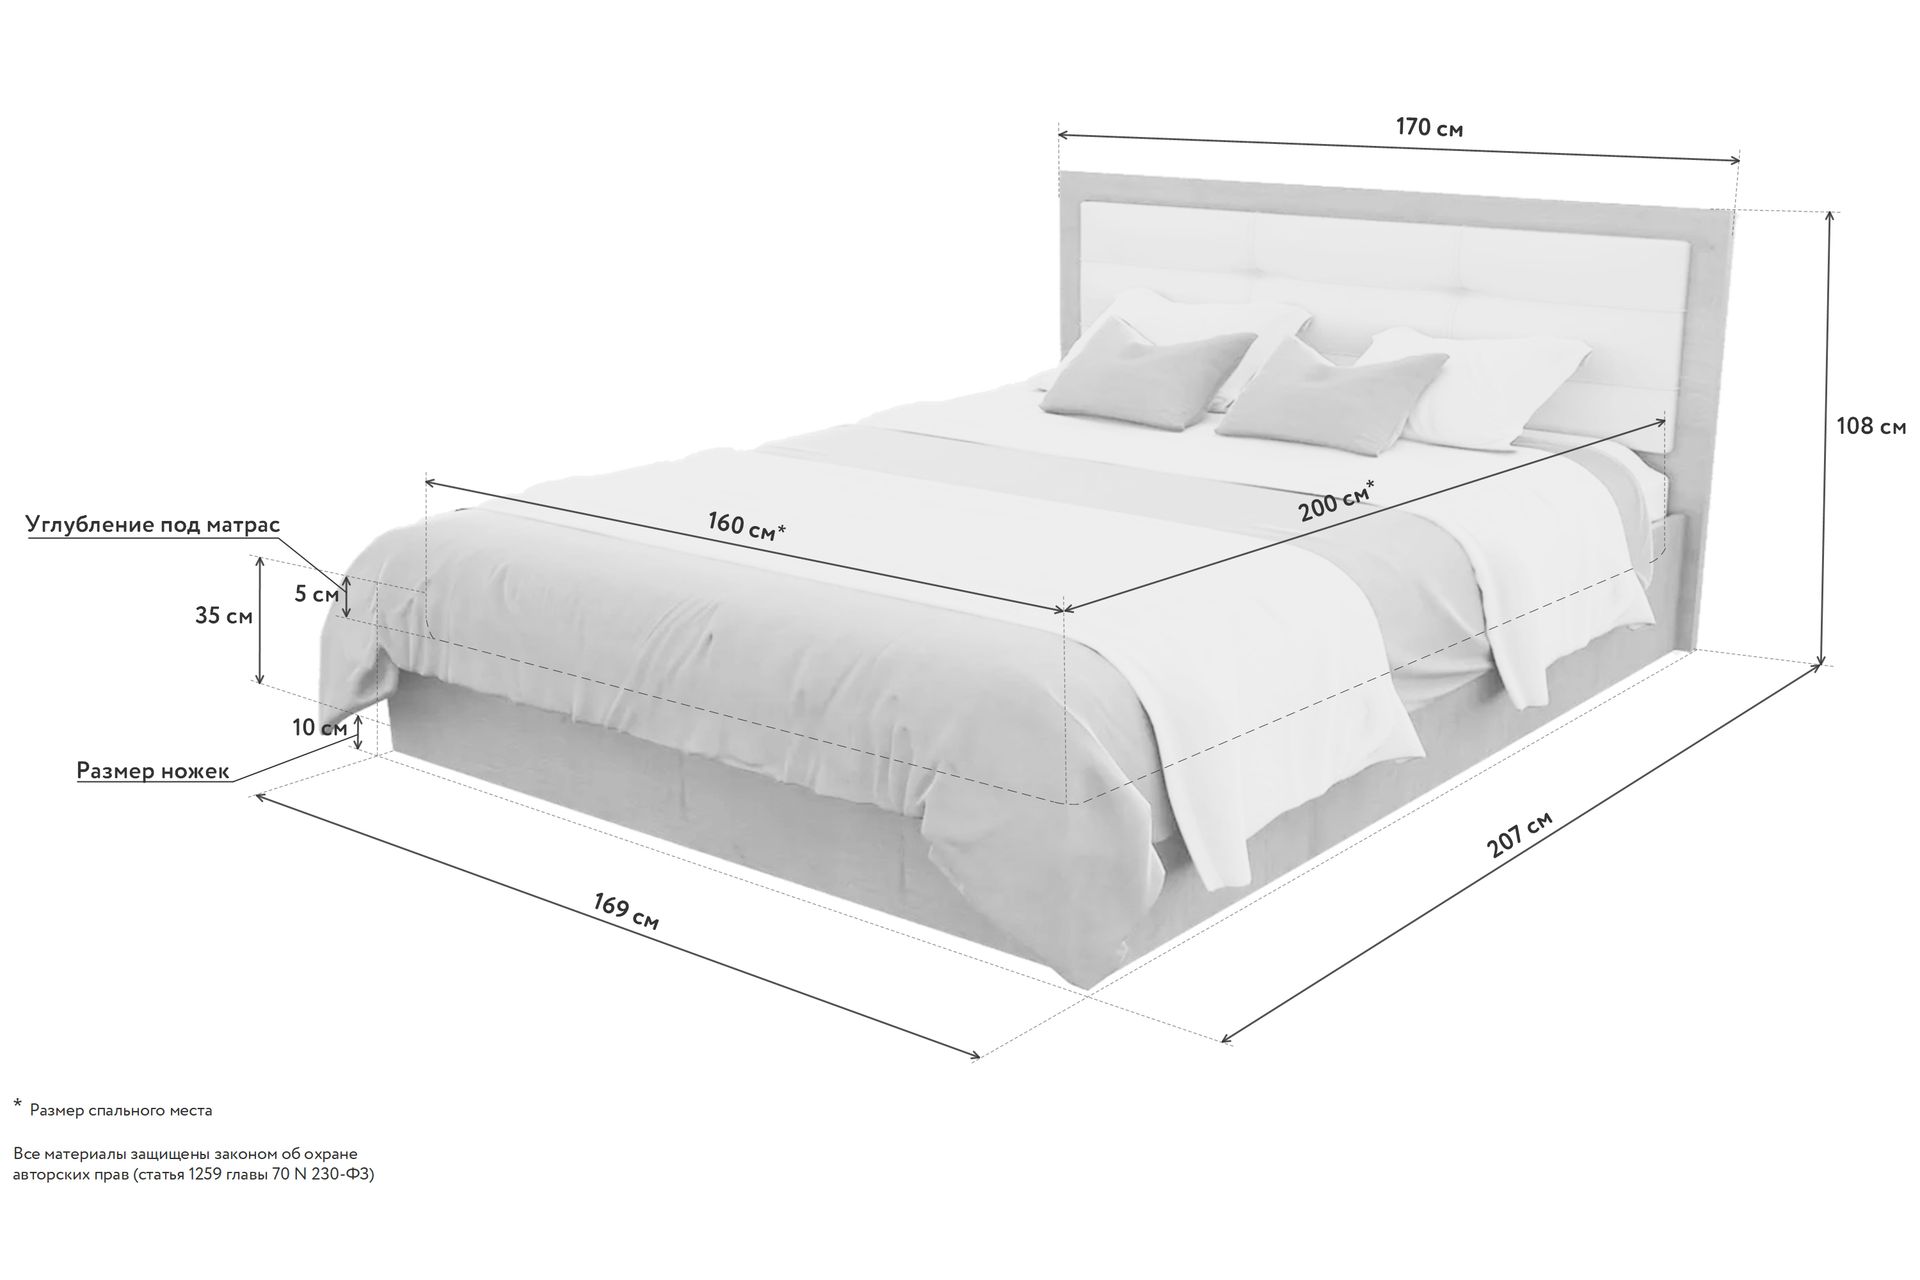 кровать высота 70 см от пола